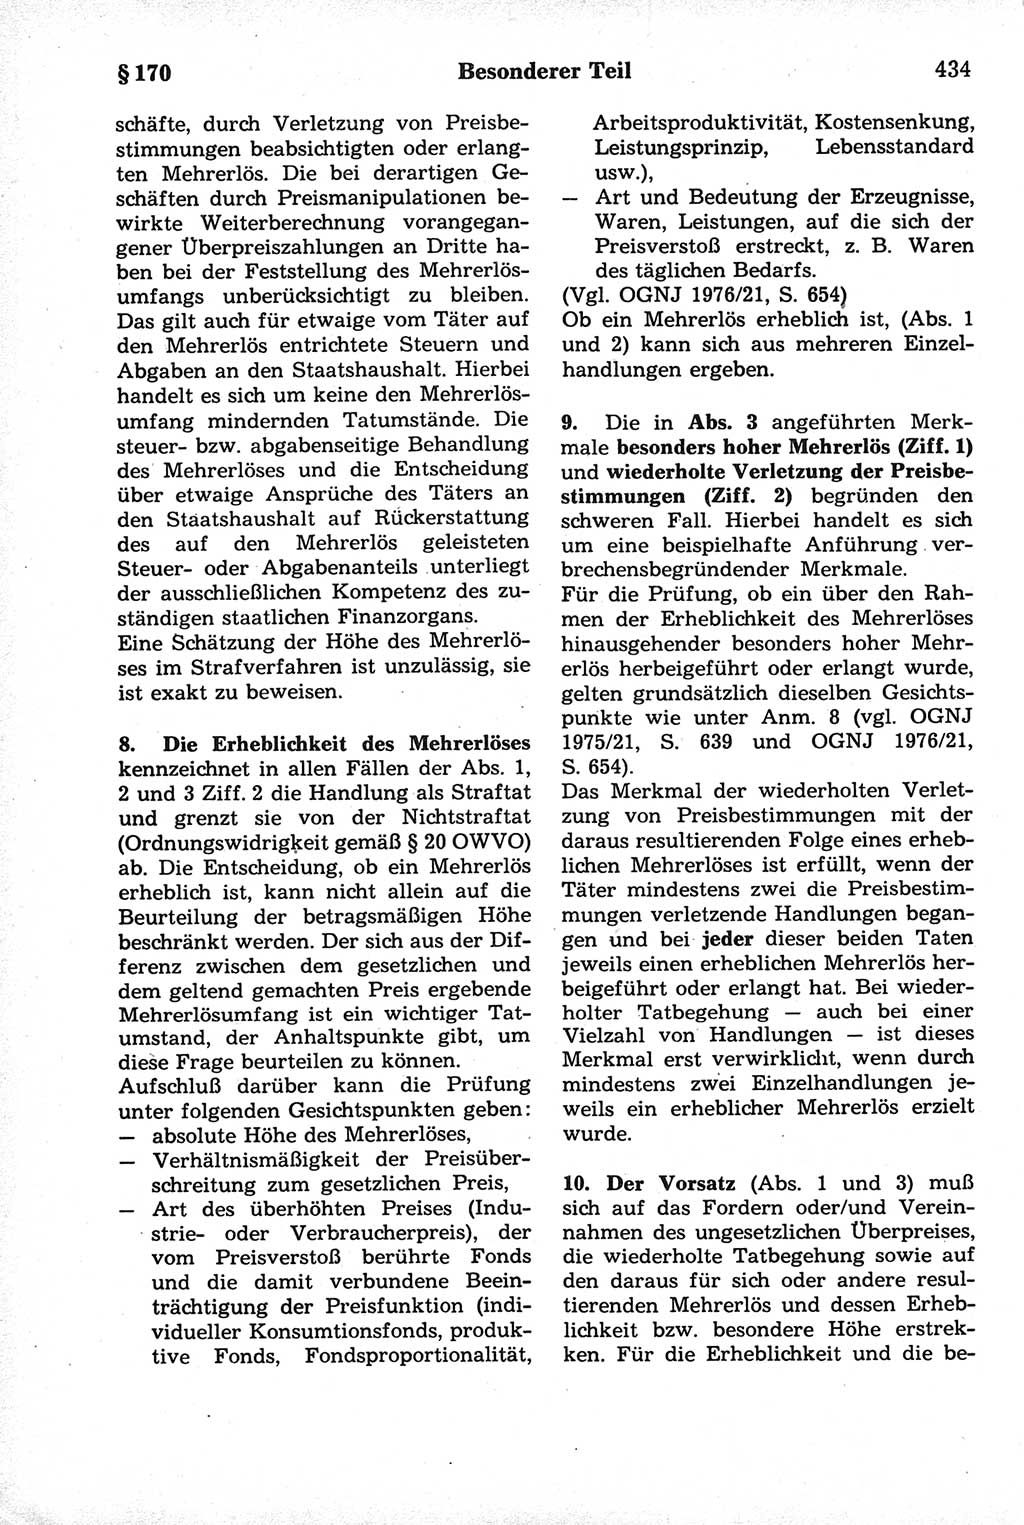 Strafrecht der Deutschen Demokratischen Republik (DDR), Kommentar zum Strafgesetzbuch (StGB) 1981, Seite 434 (Strafr. DDR Komm. StGB 1981, S. 434)